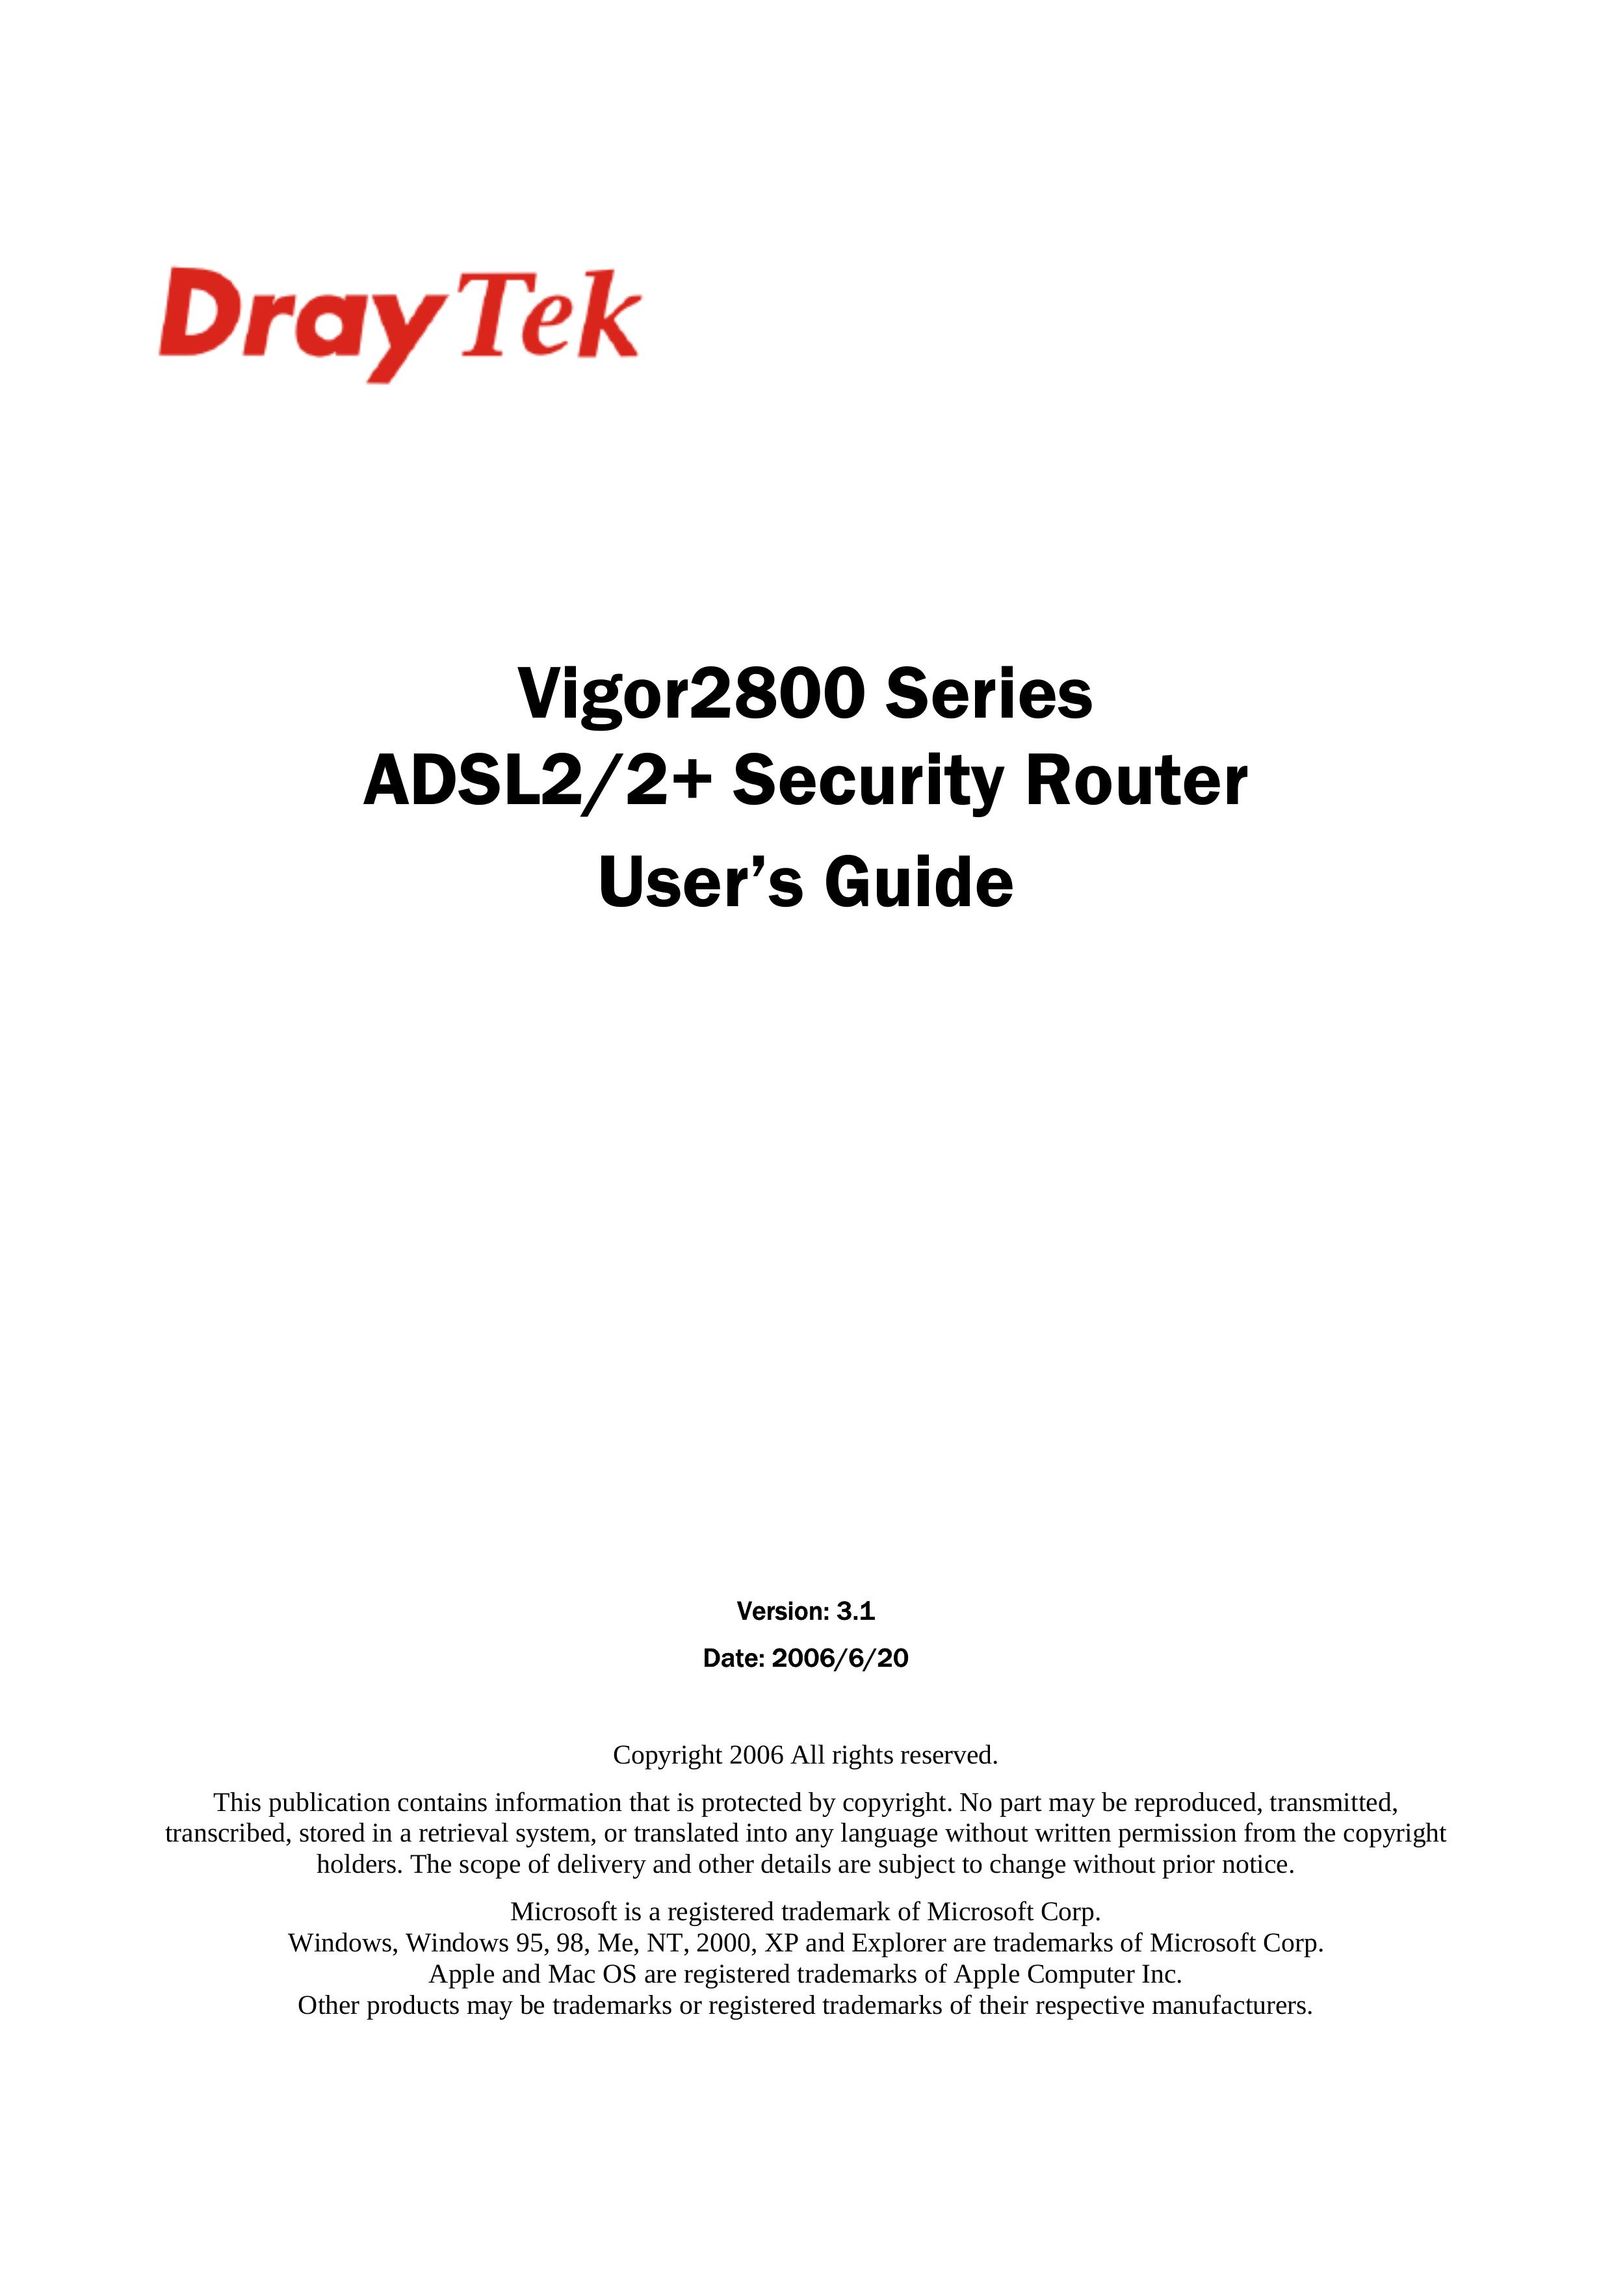 Draytek 2800 Series Network Router User Manual